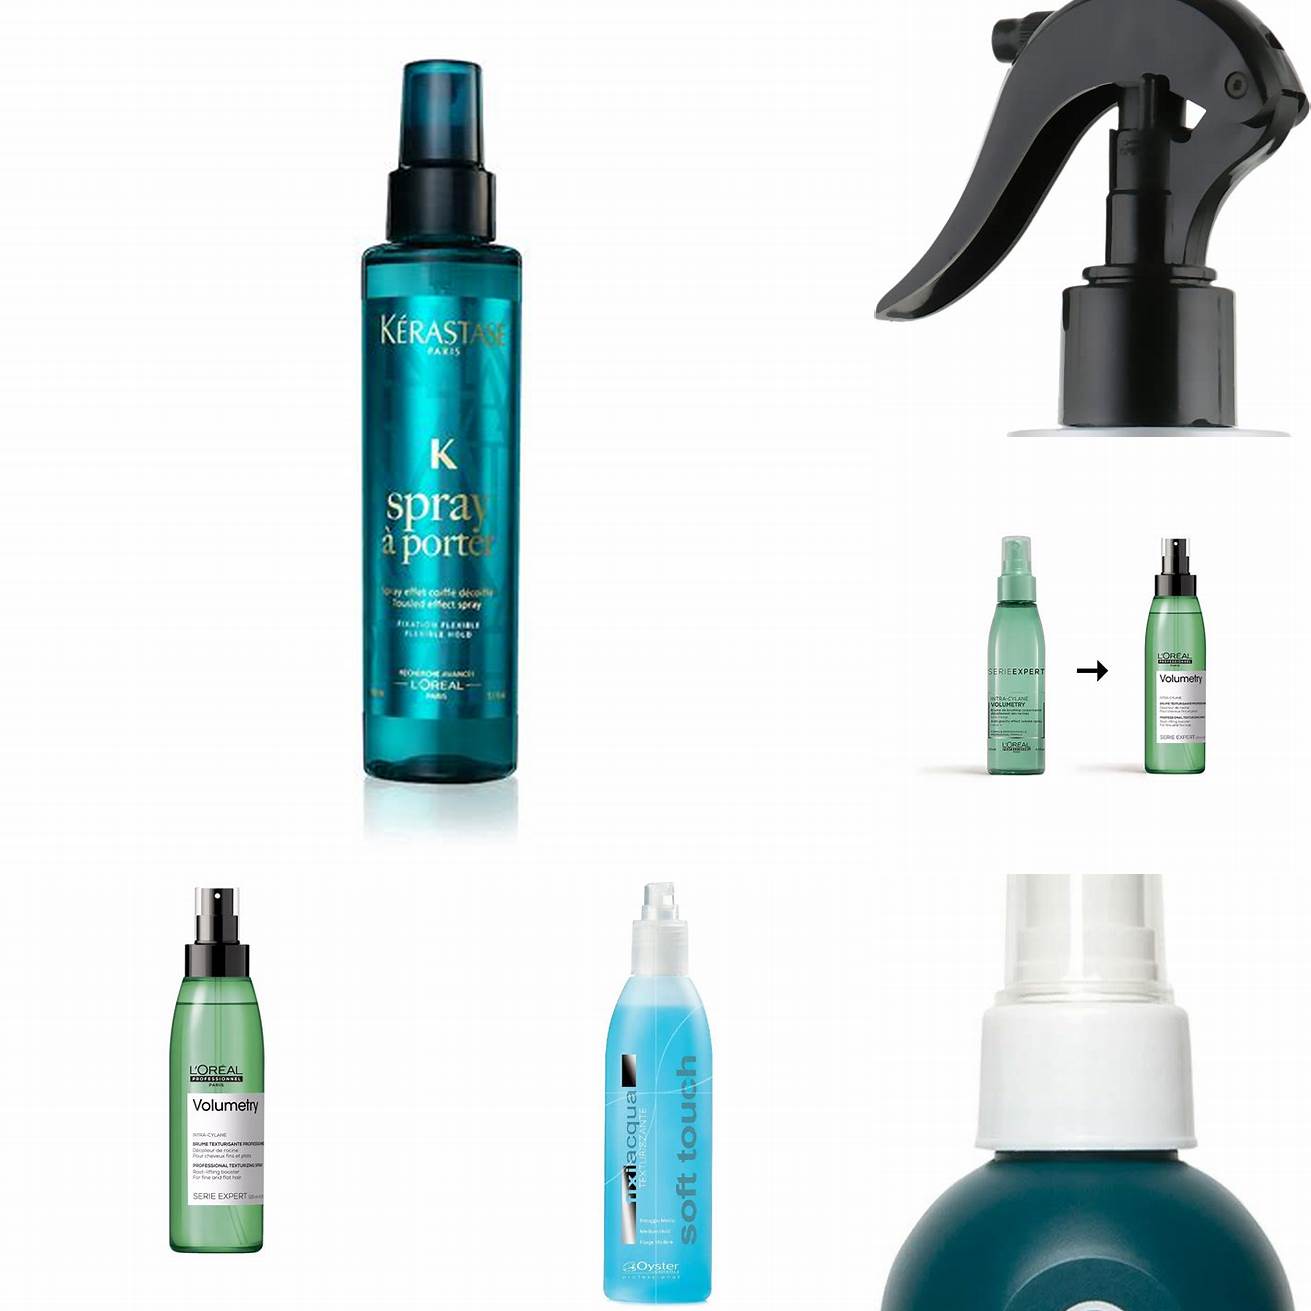 Spray texturant Le spray texturant est un produit idéal pour ajouter de la texture et du volume aux cheveux bouclés Il peut être utilisé sur les cheveux secs ou humides